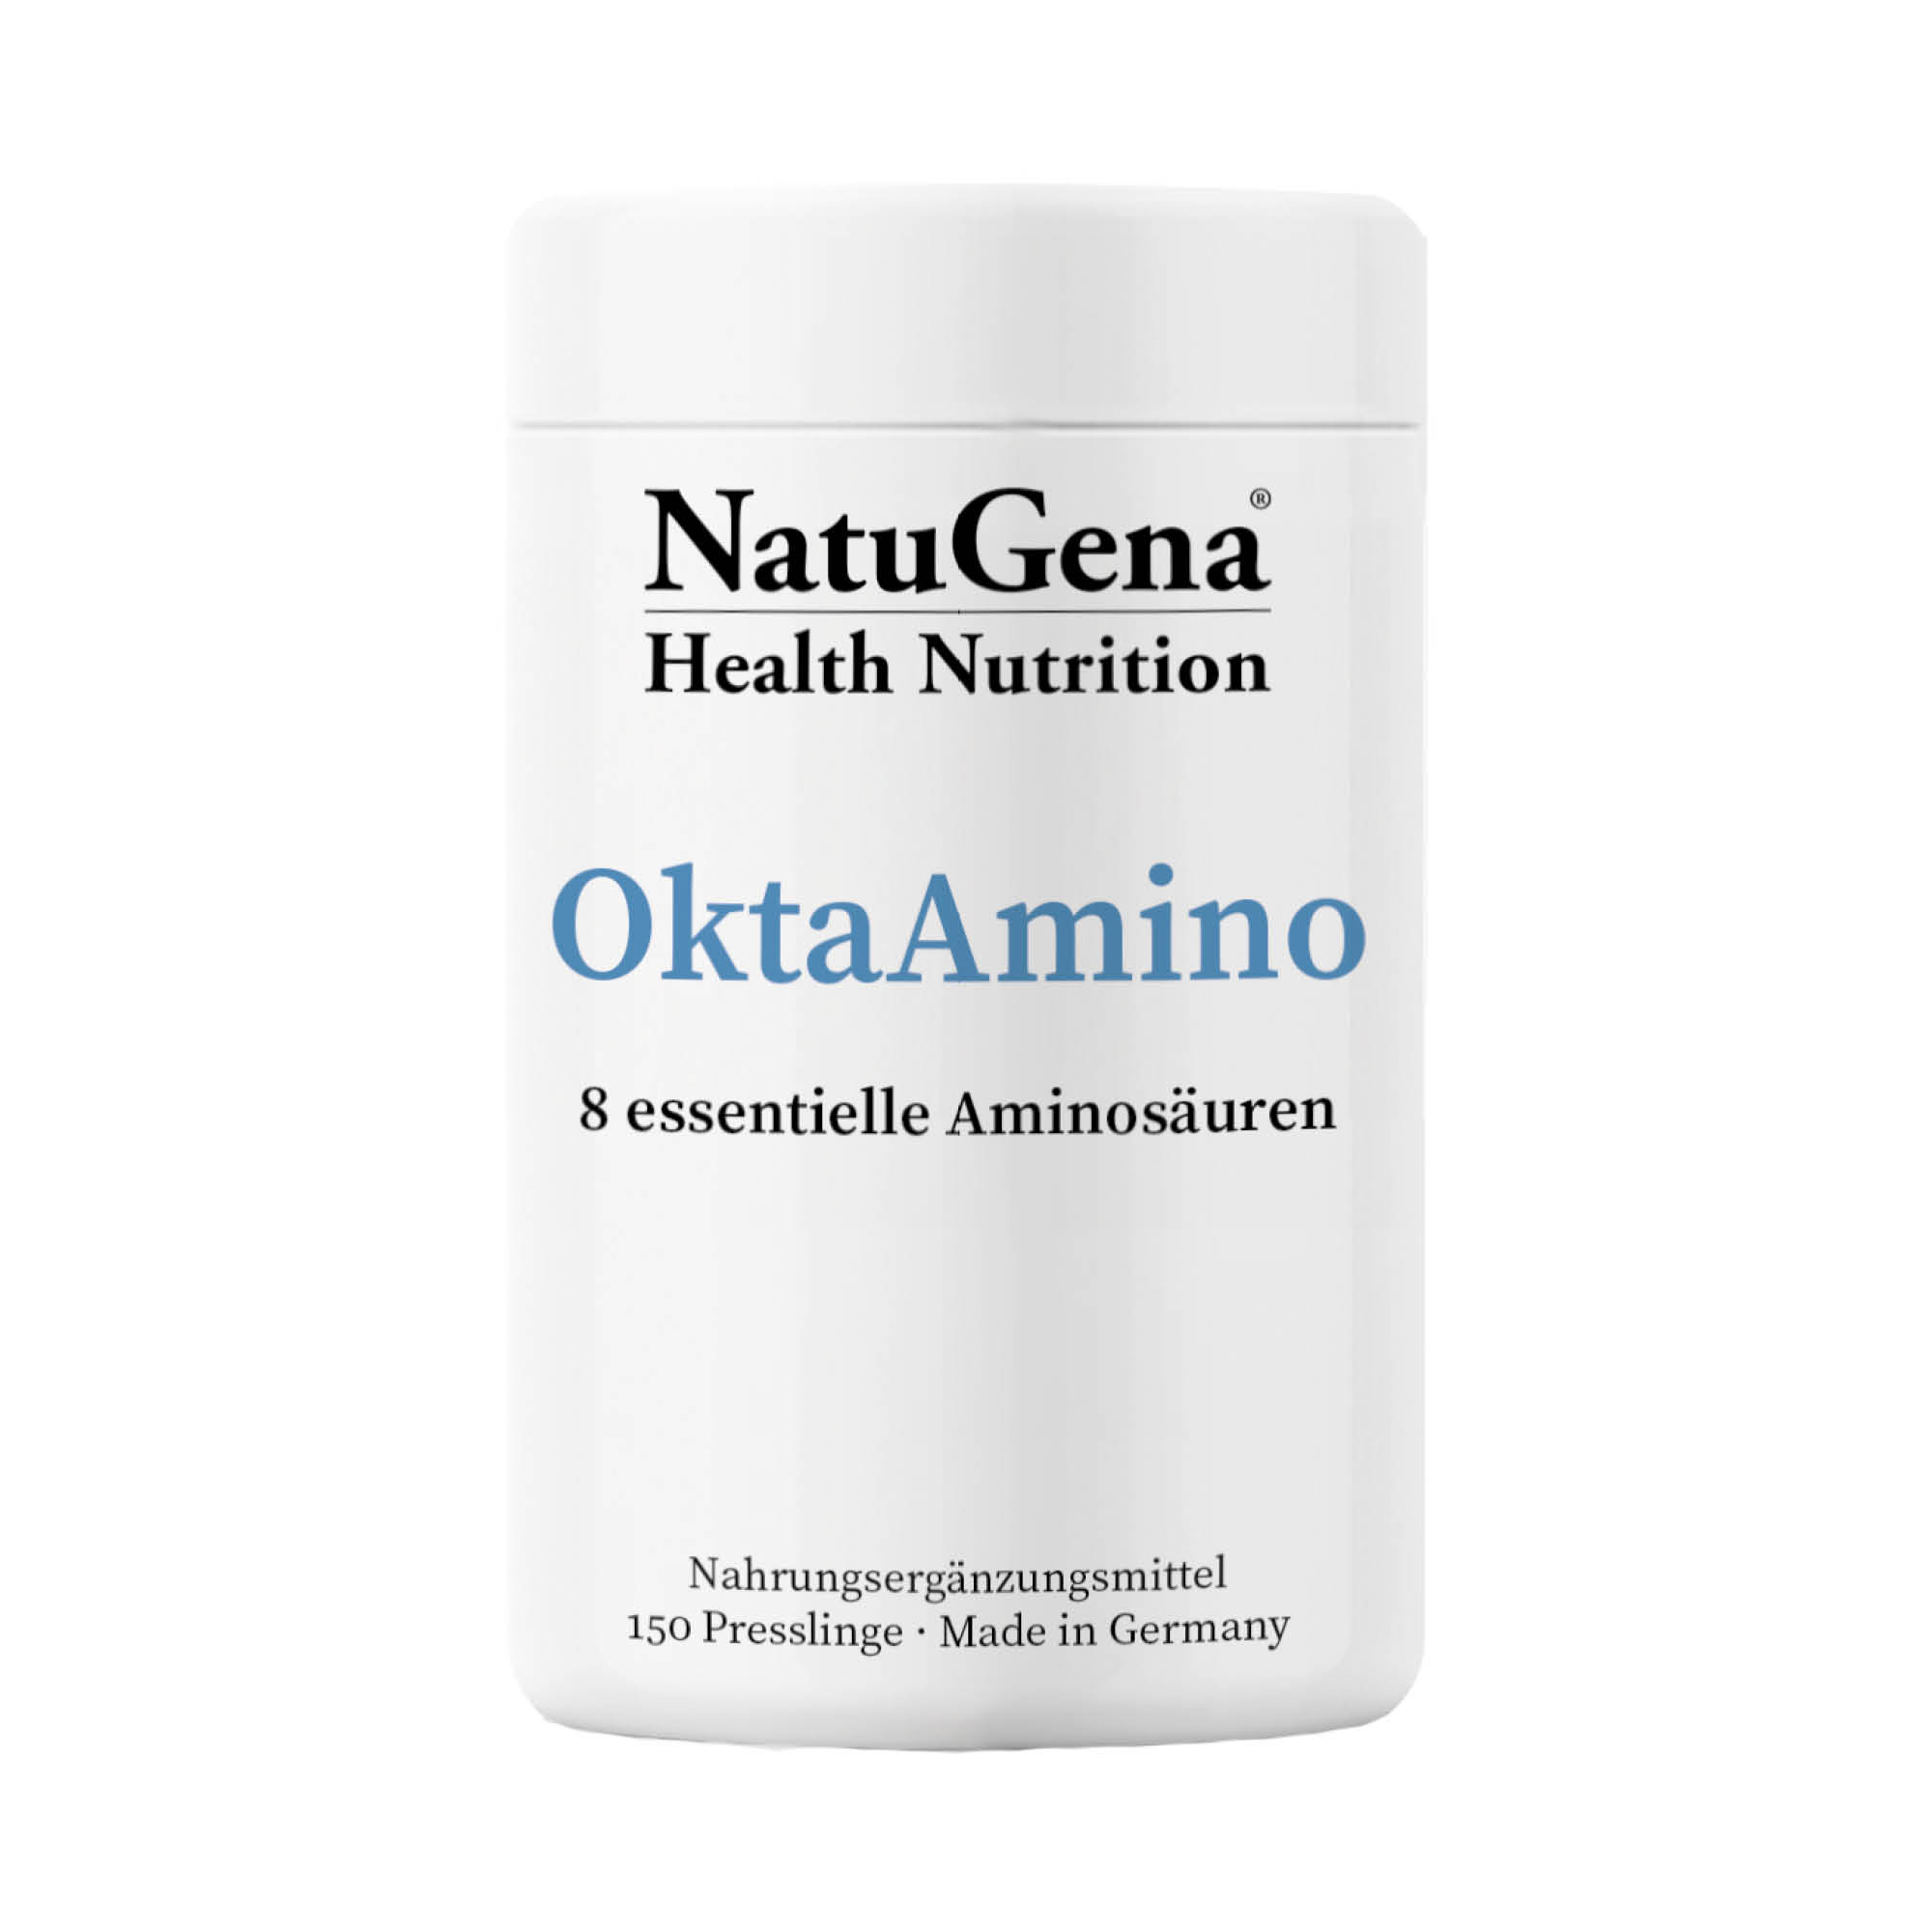 NatuGena OktaAmino | 150 Presslinge  Optimale Aminosäurenformel für Proteinmetabolismus & schnelle Absorption